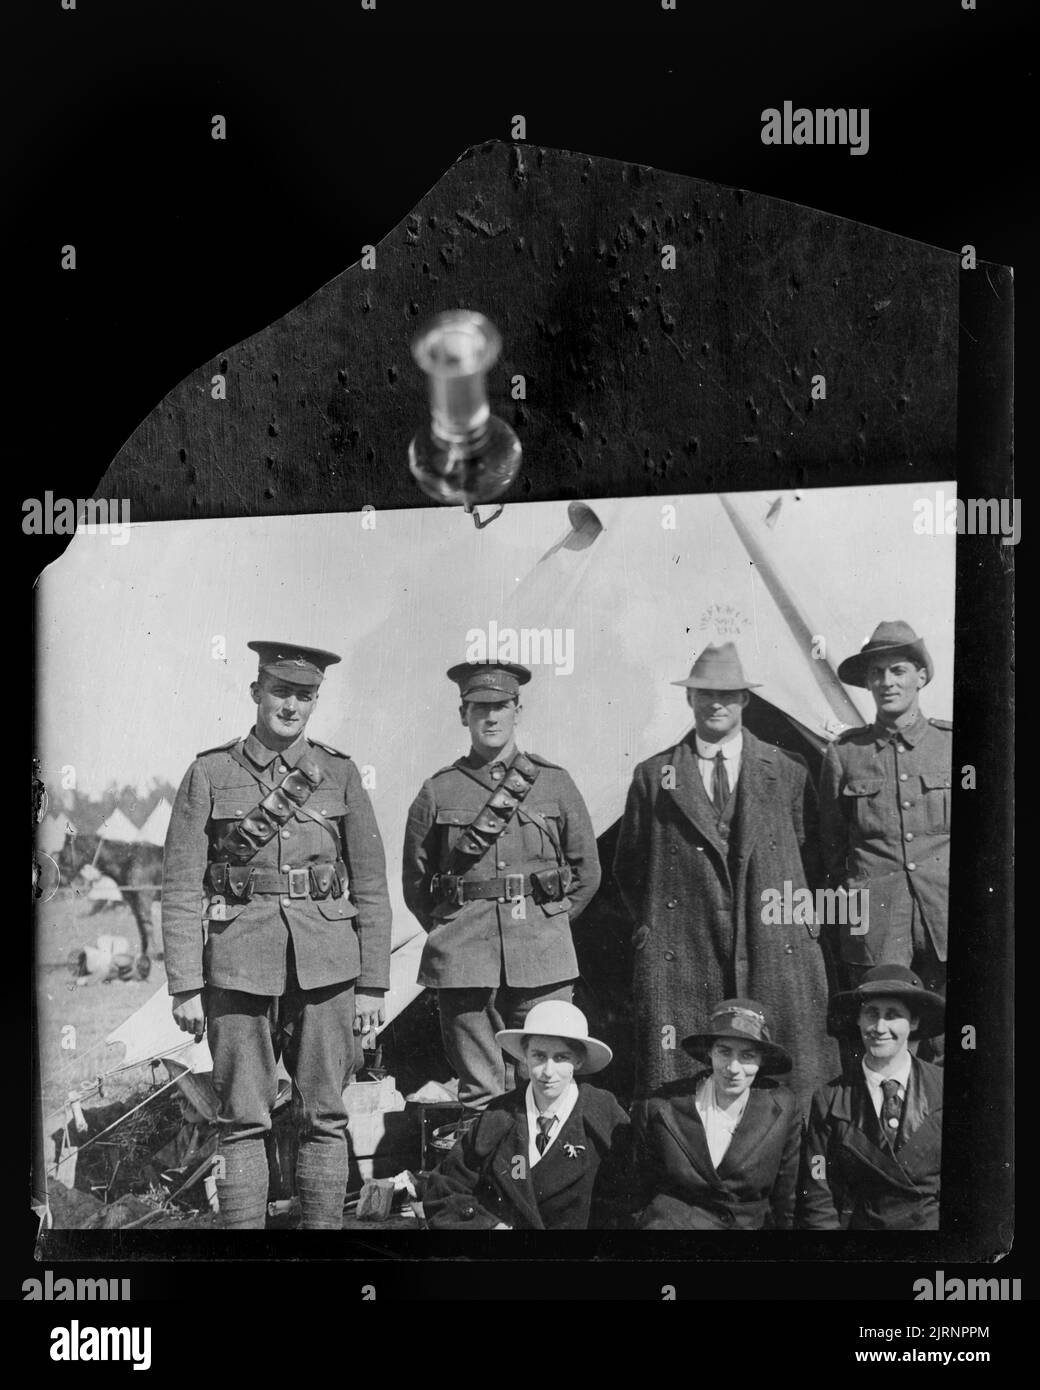 Soldats et civils, vers 1915, fabricant inconnu. Banque D'Images